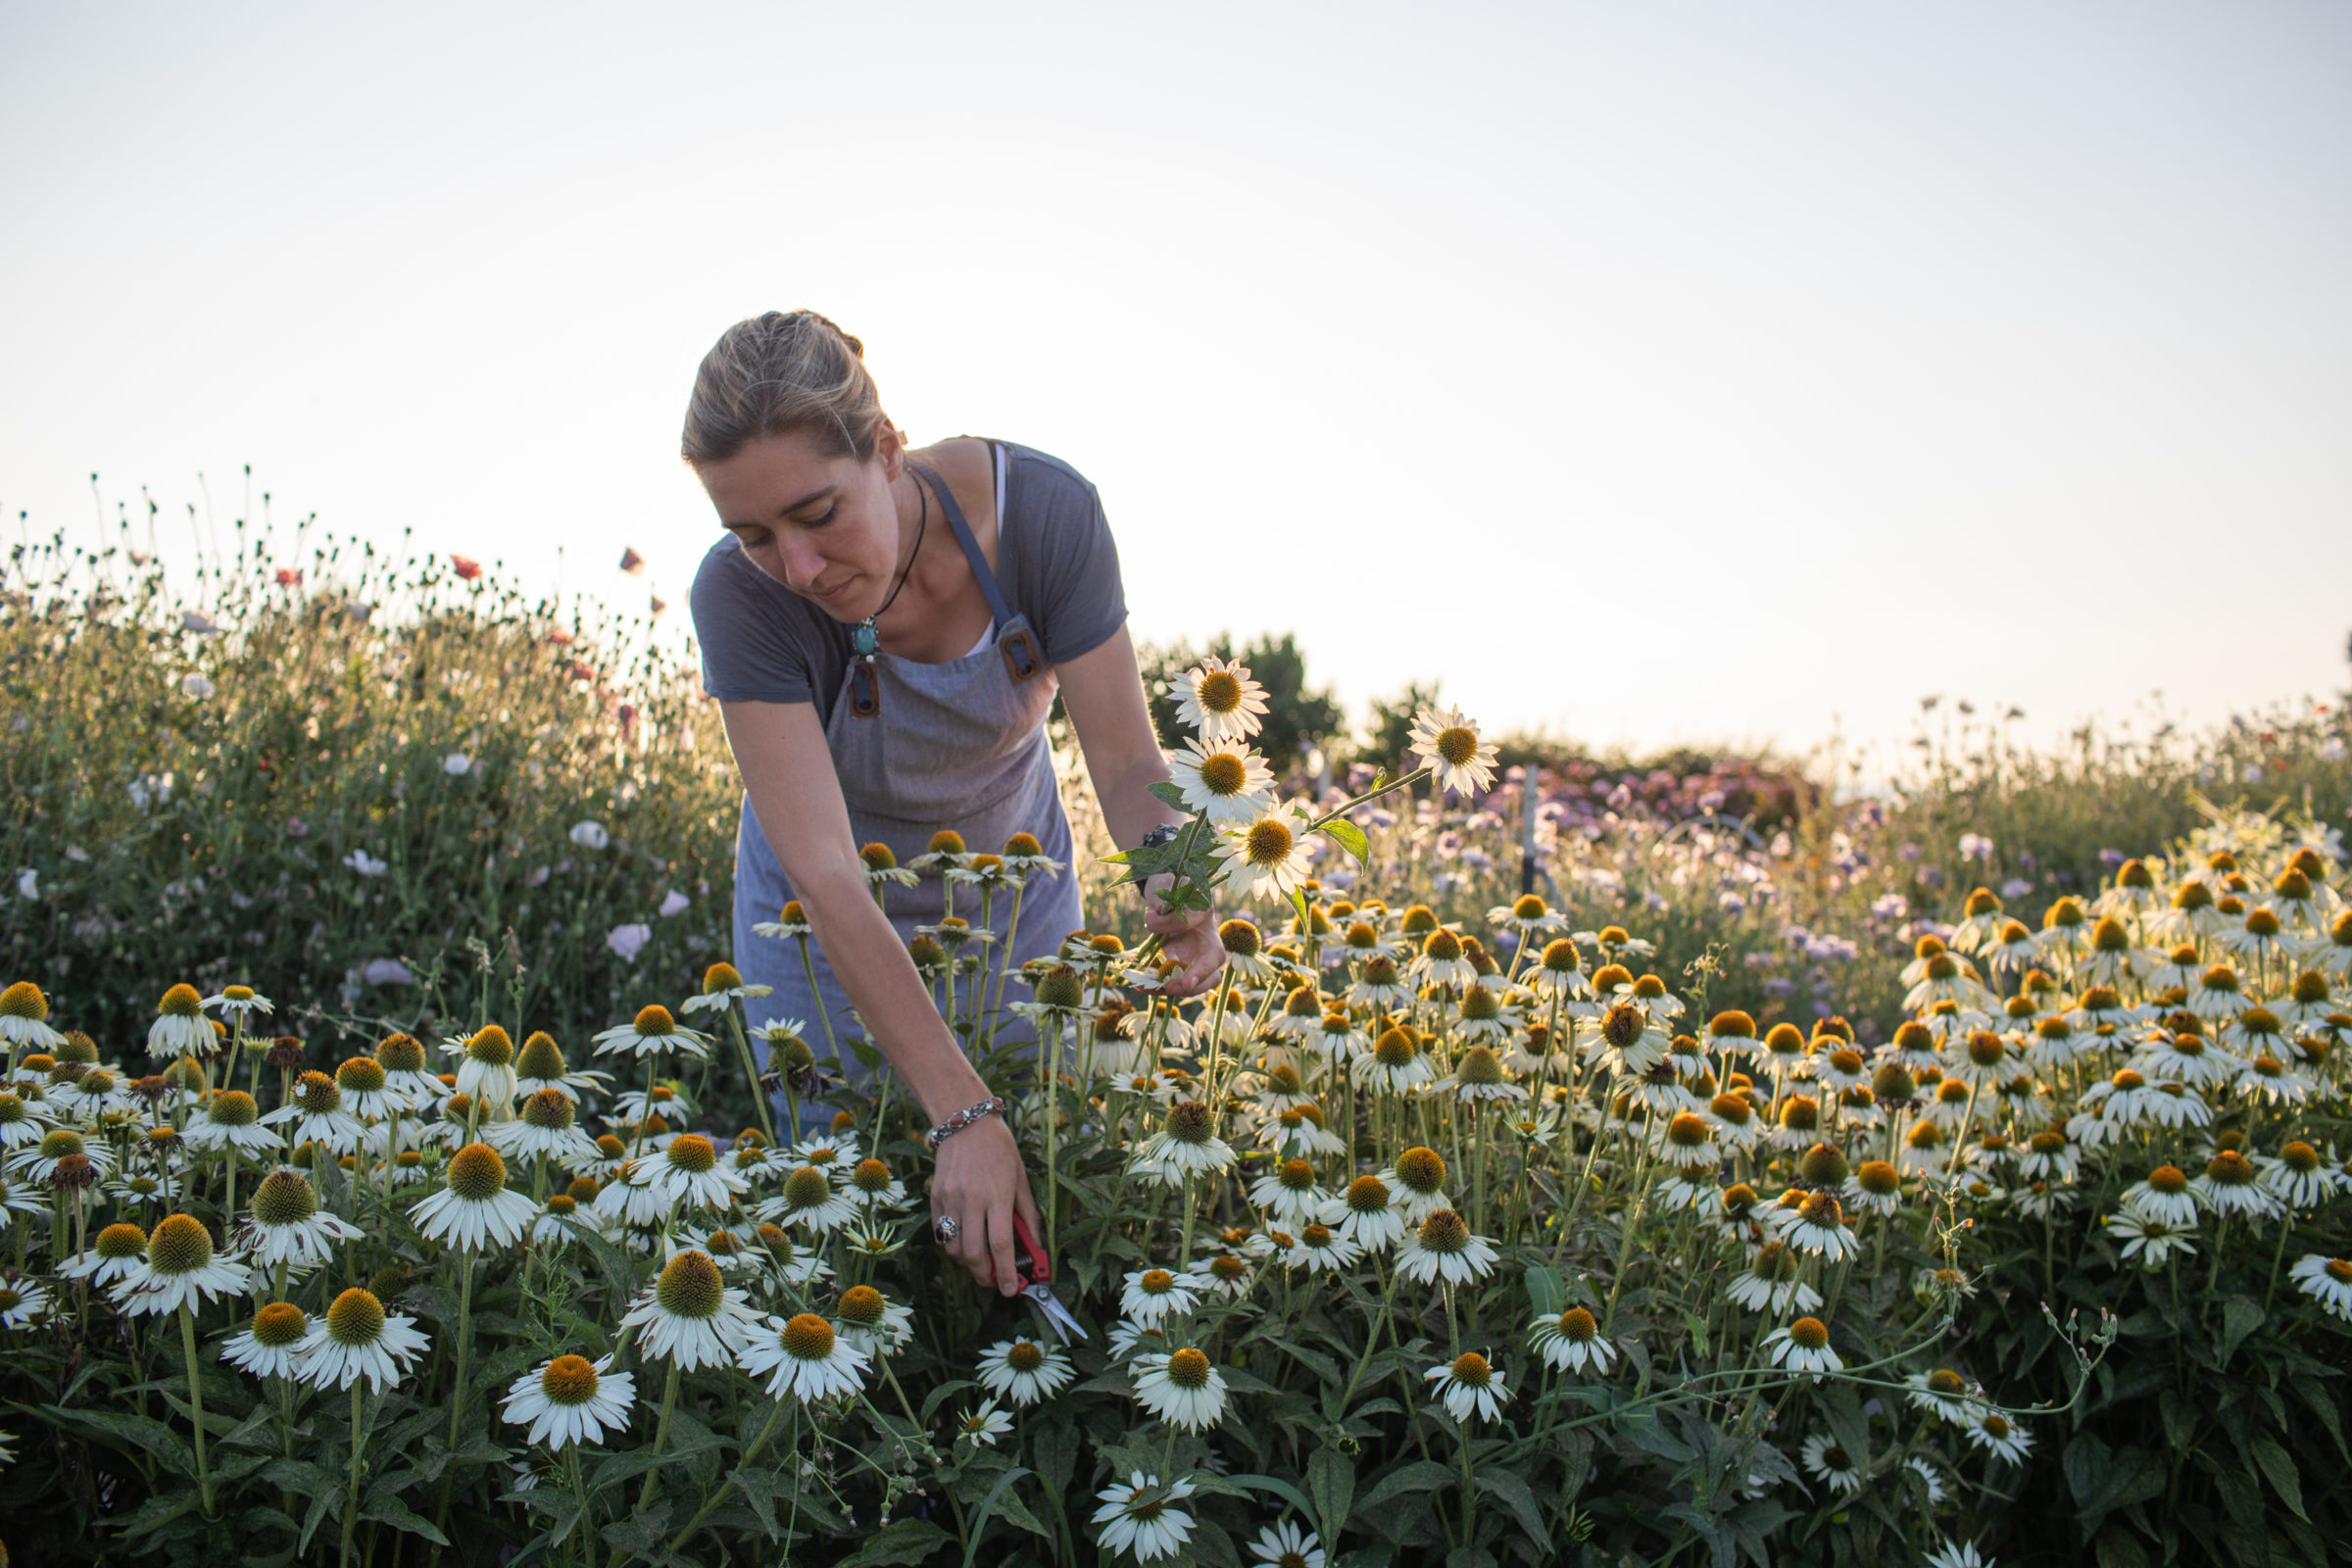 Erin Benzakein harvesting flowers